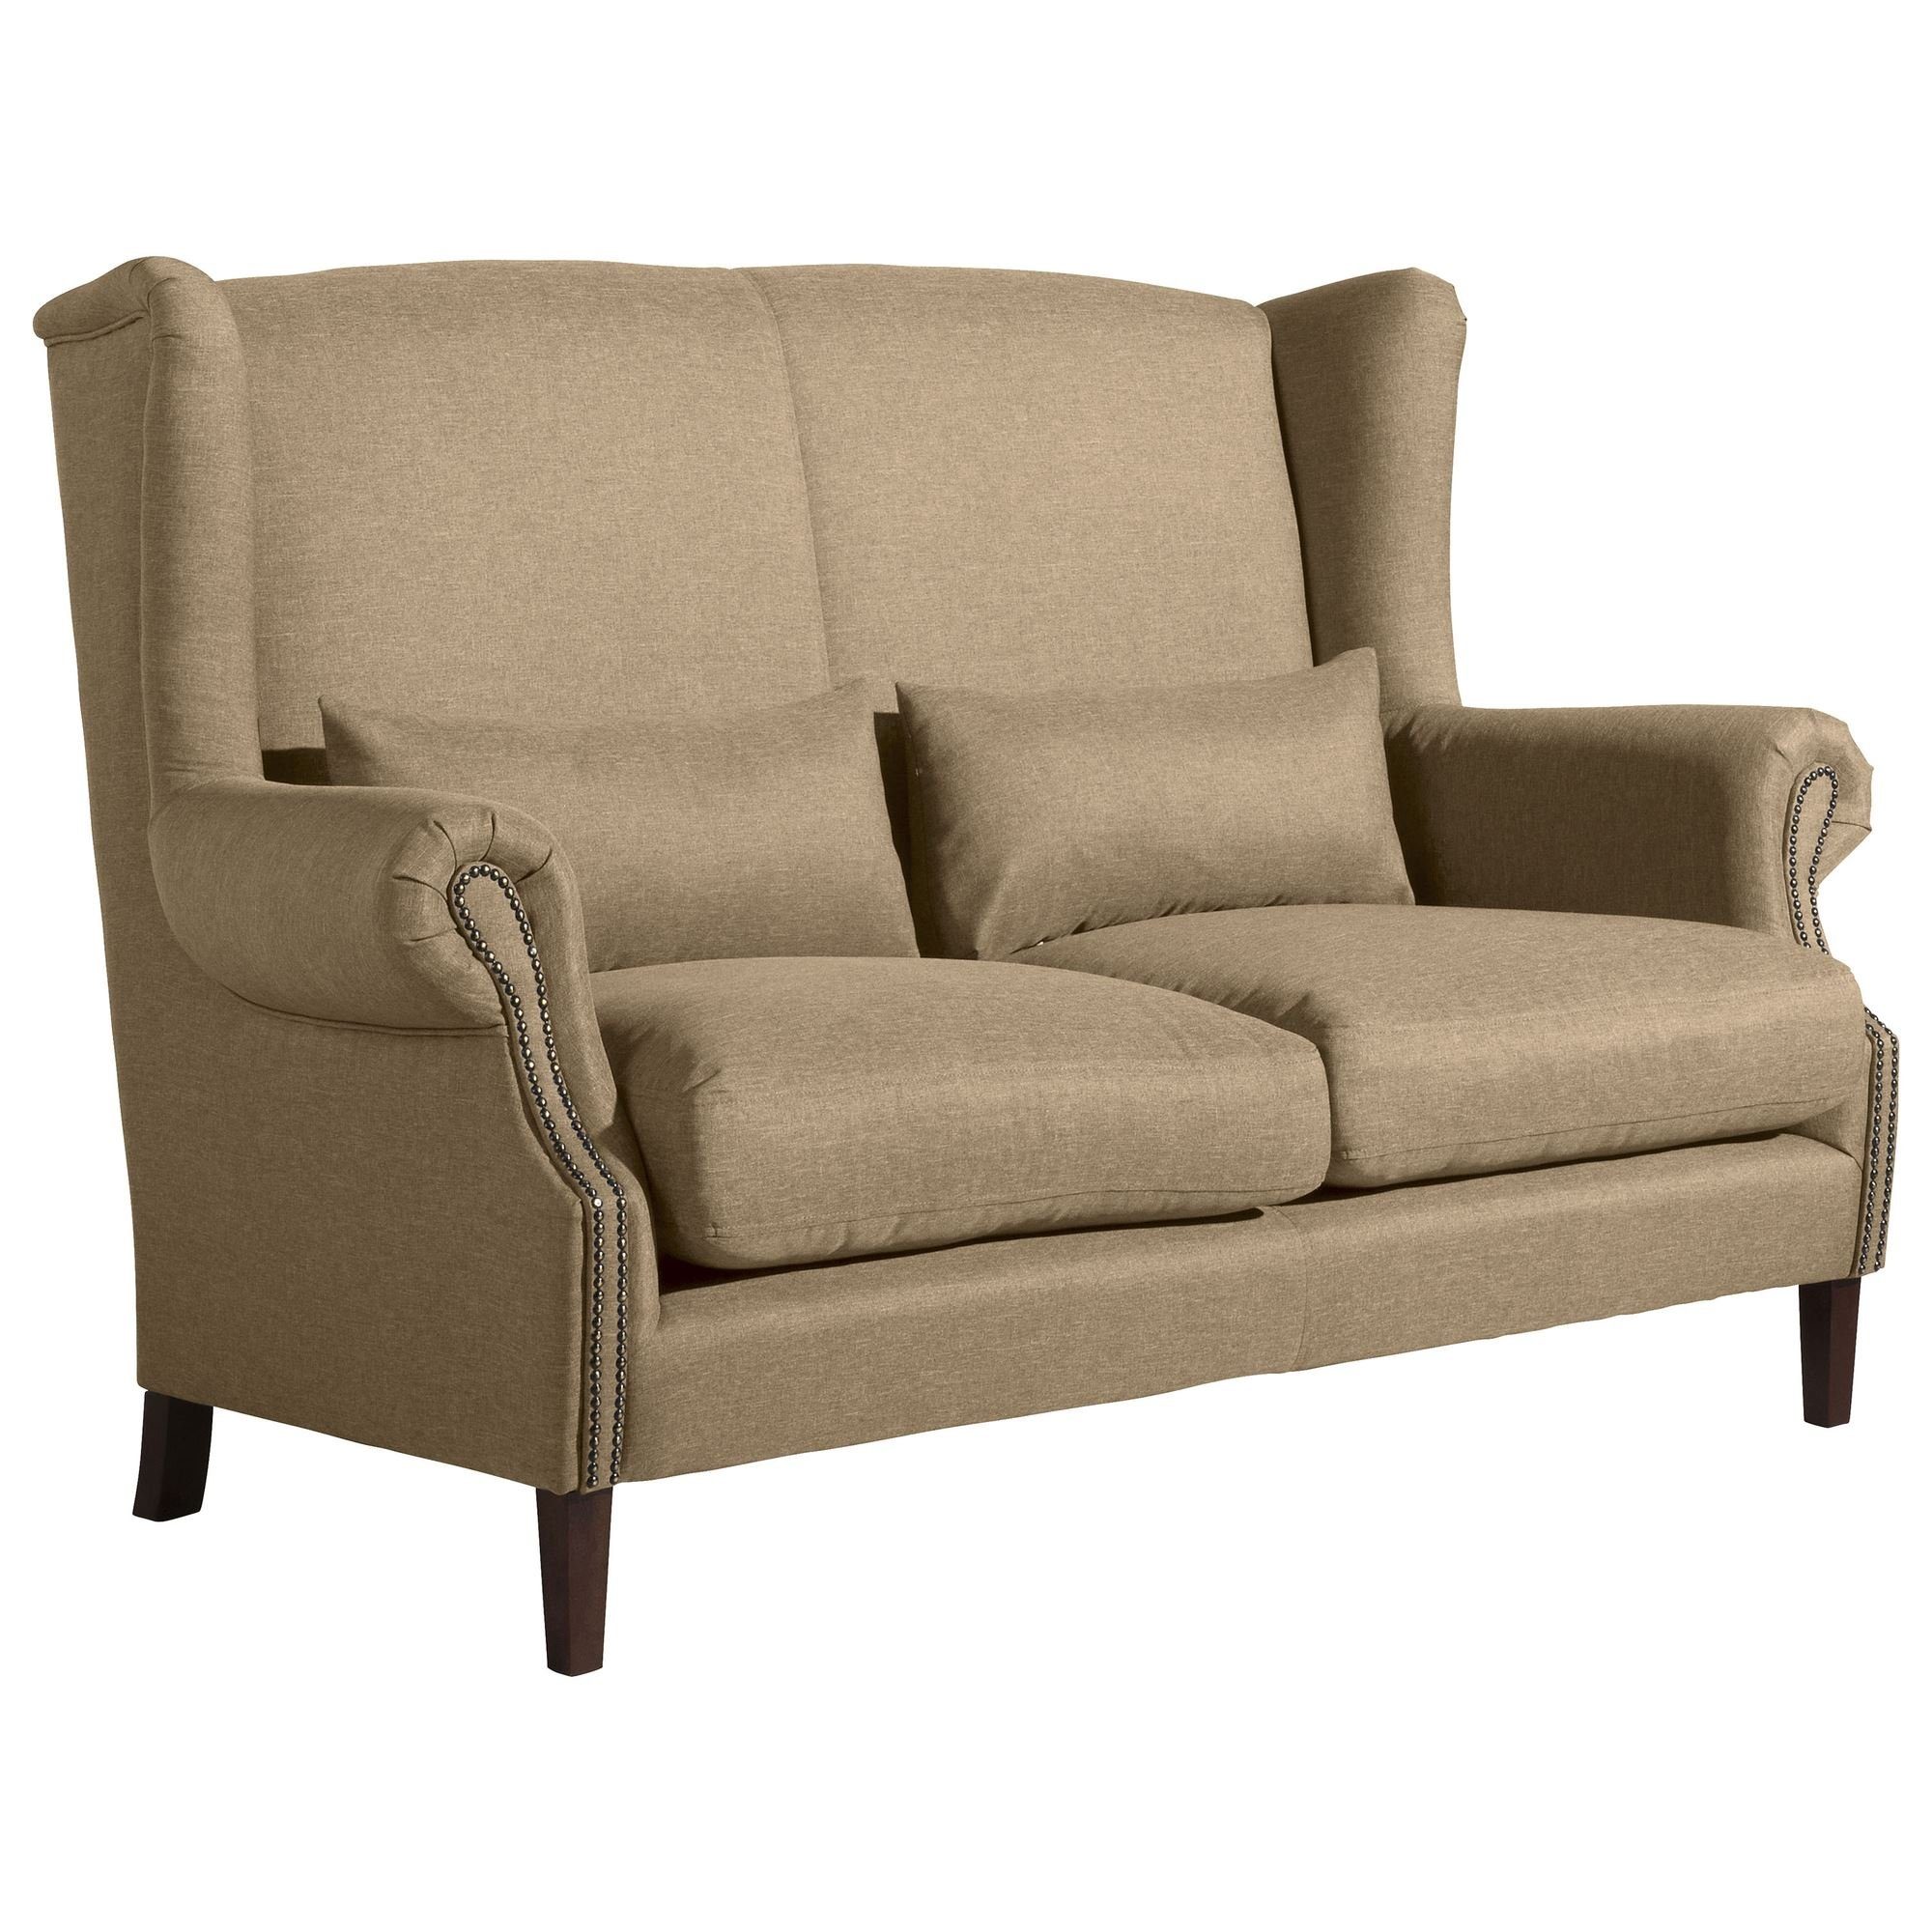 aufm Teile, Kandy Buche Flachgewebe Sofa Sofa 58 Versand inkl. 1 Sparpreis nussba, Sitz hochwertig Kostenlosem Kessel verarbeitet,bequemer 2-Sitzer Bezug